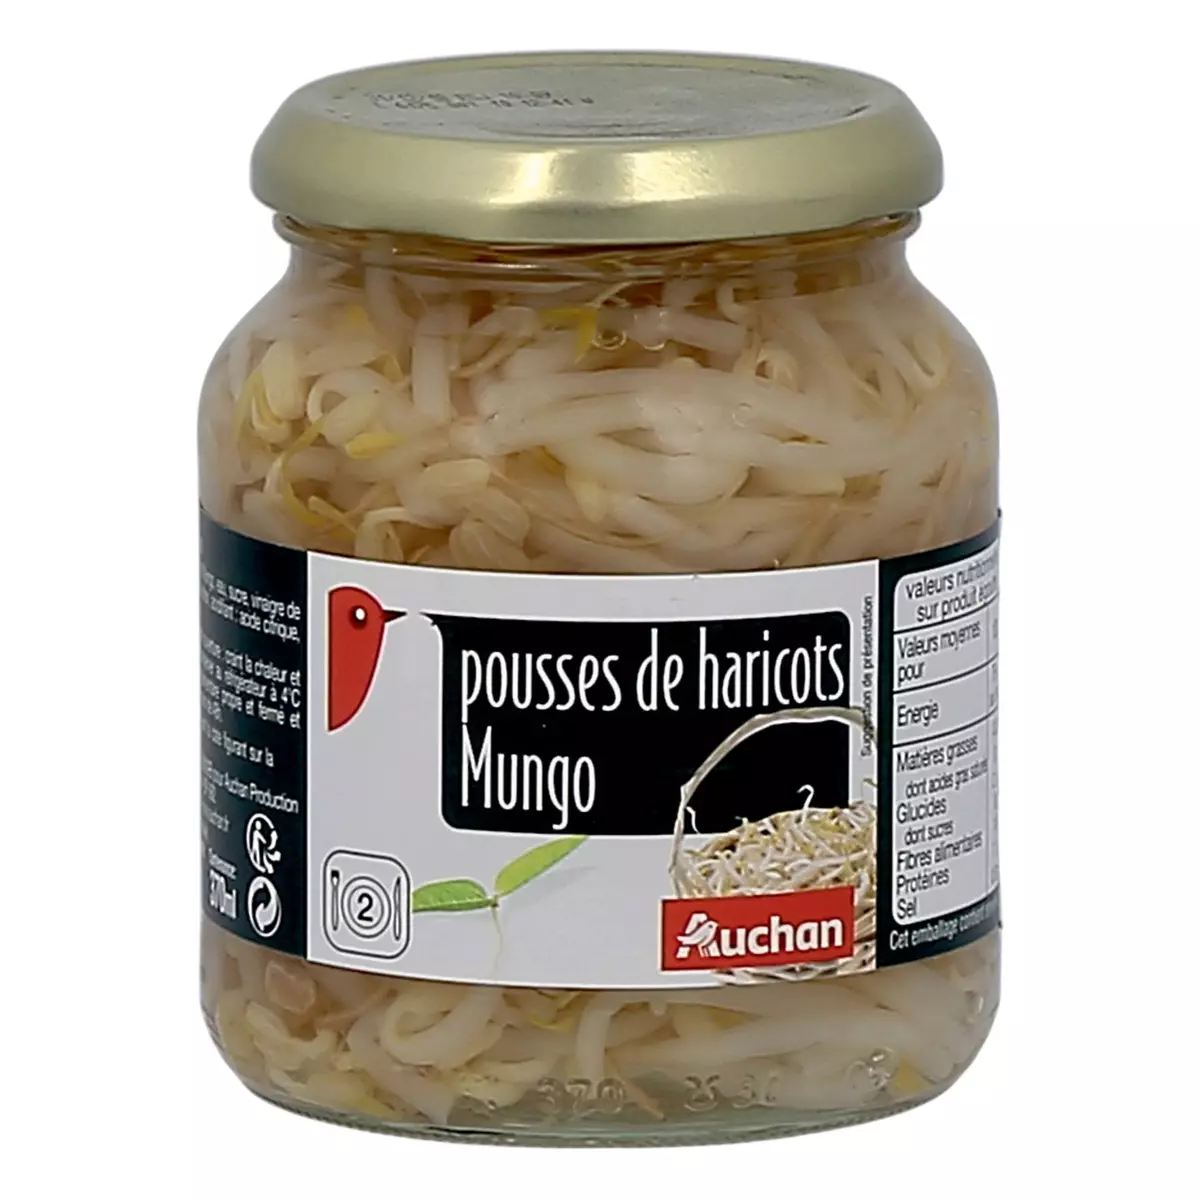 AUCHAN Pousses de haricots Mungo 2 portions 175g